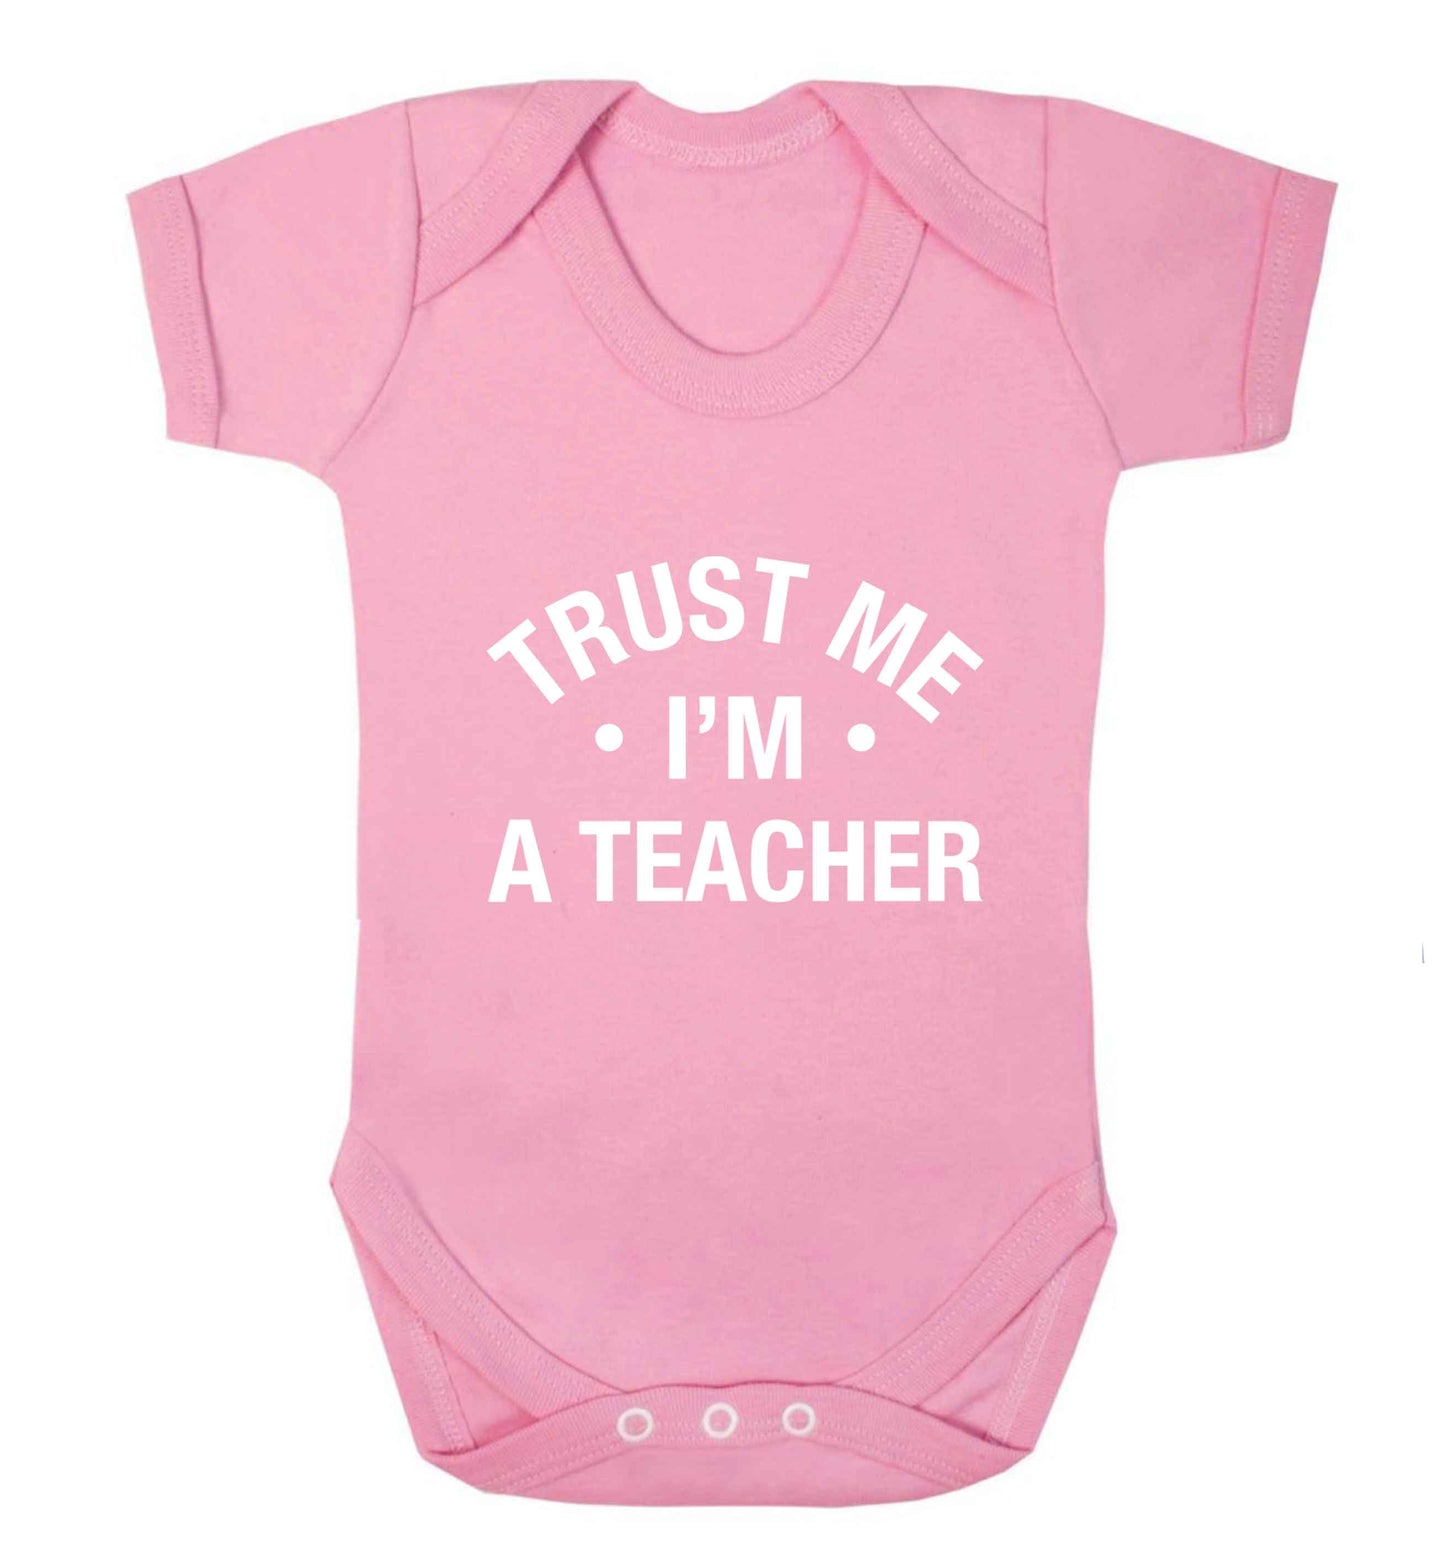 Trust me I'm a teacher baby vest pale pink 18-24 months